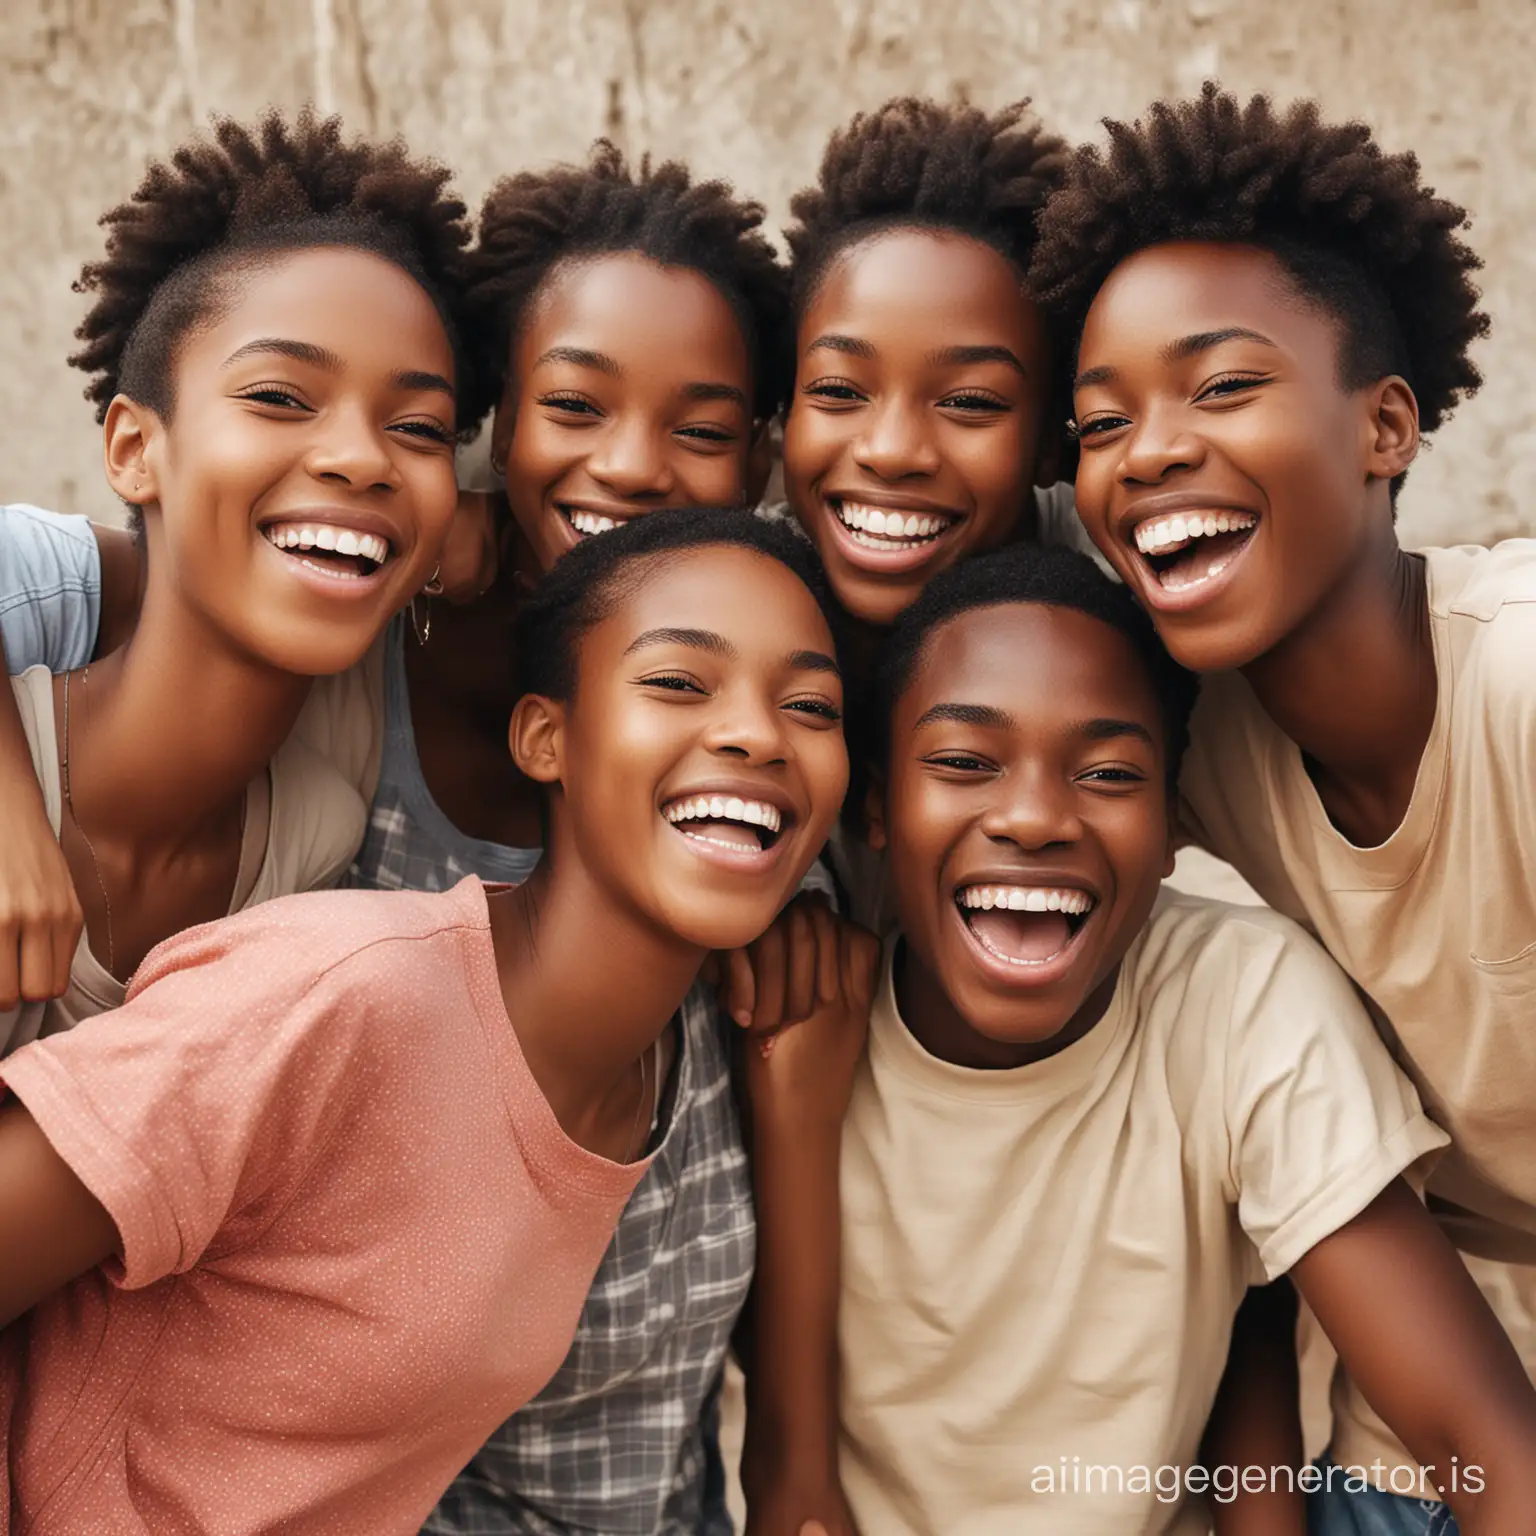 Joyful-African-Teenagers-Bonding-in-Laughter